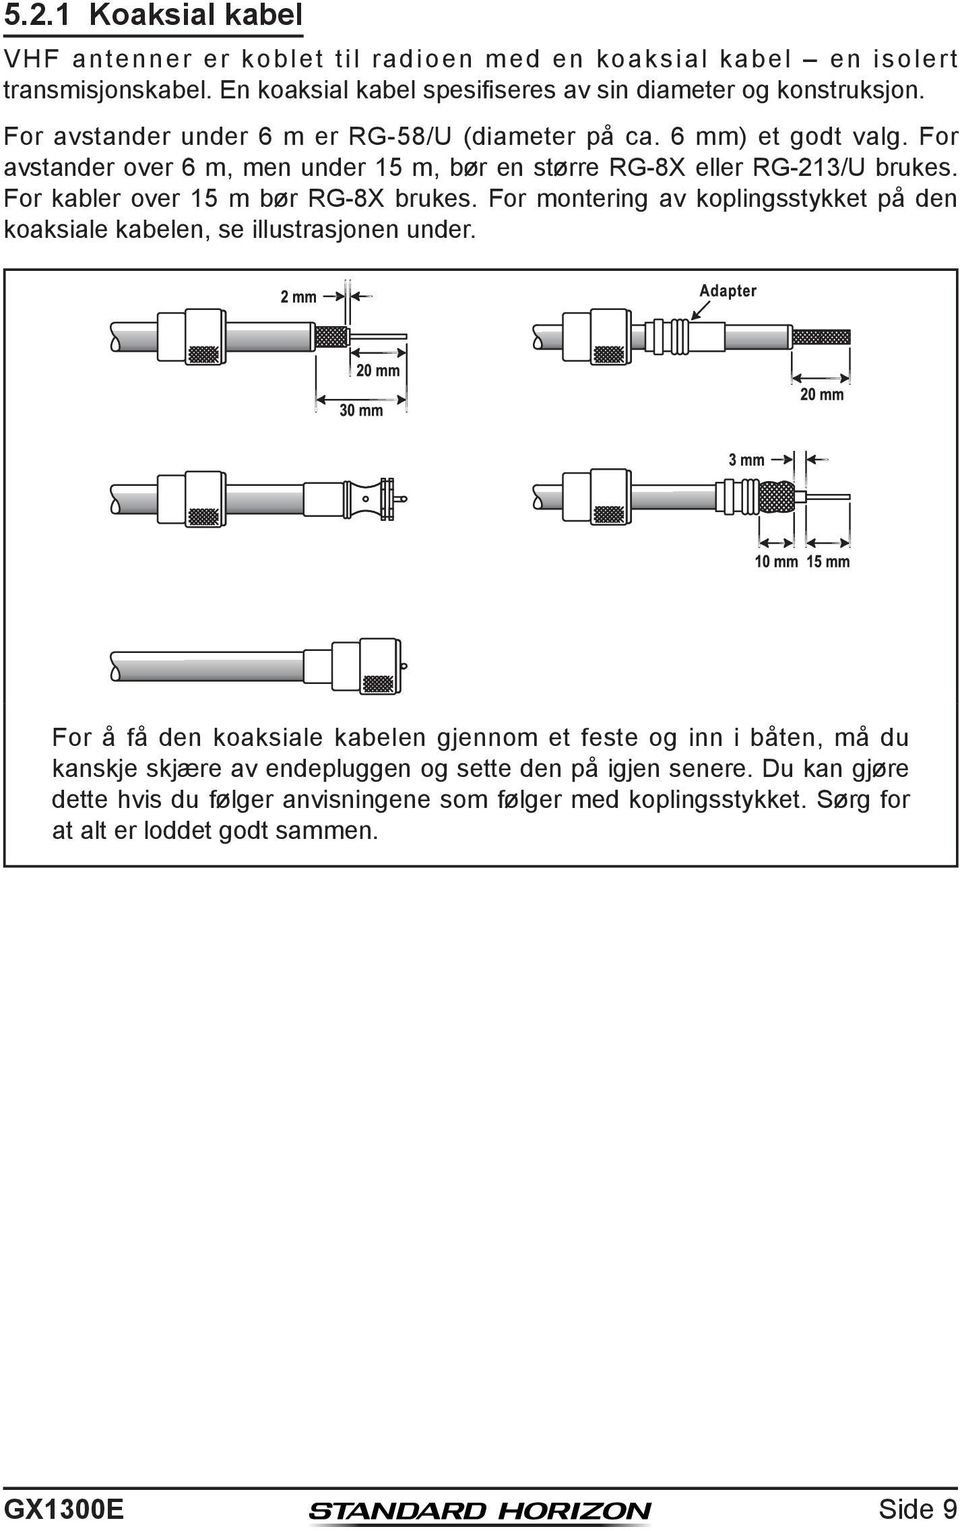 For kabler over 15 m bør RG-8X brukes. For montering av koplingsstykket på den koaksiale kabelen, se illustrasjonen under.